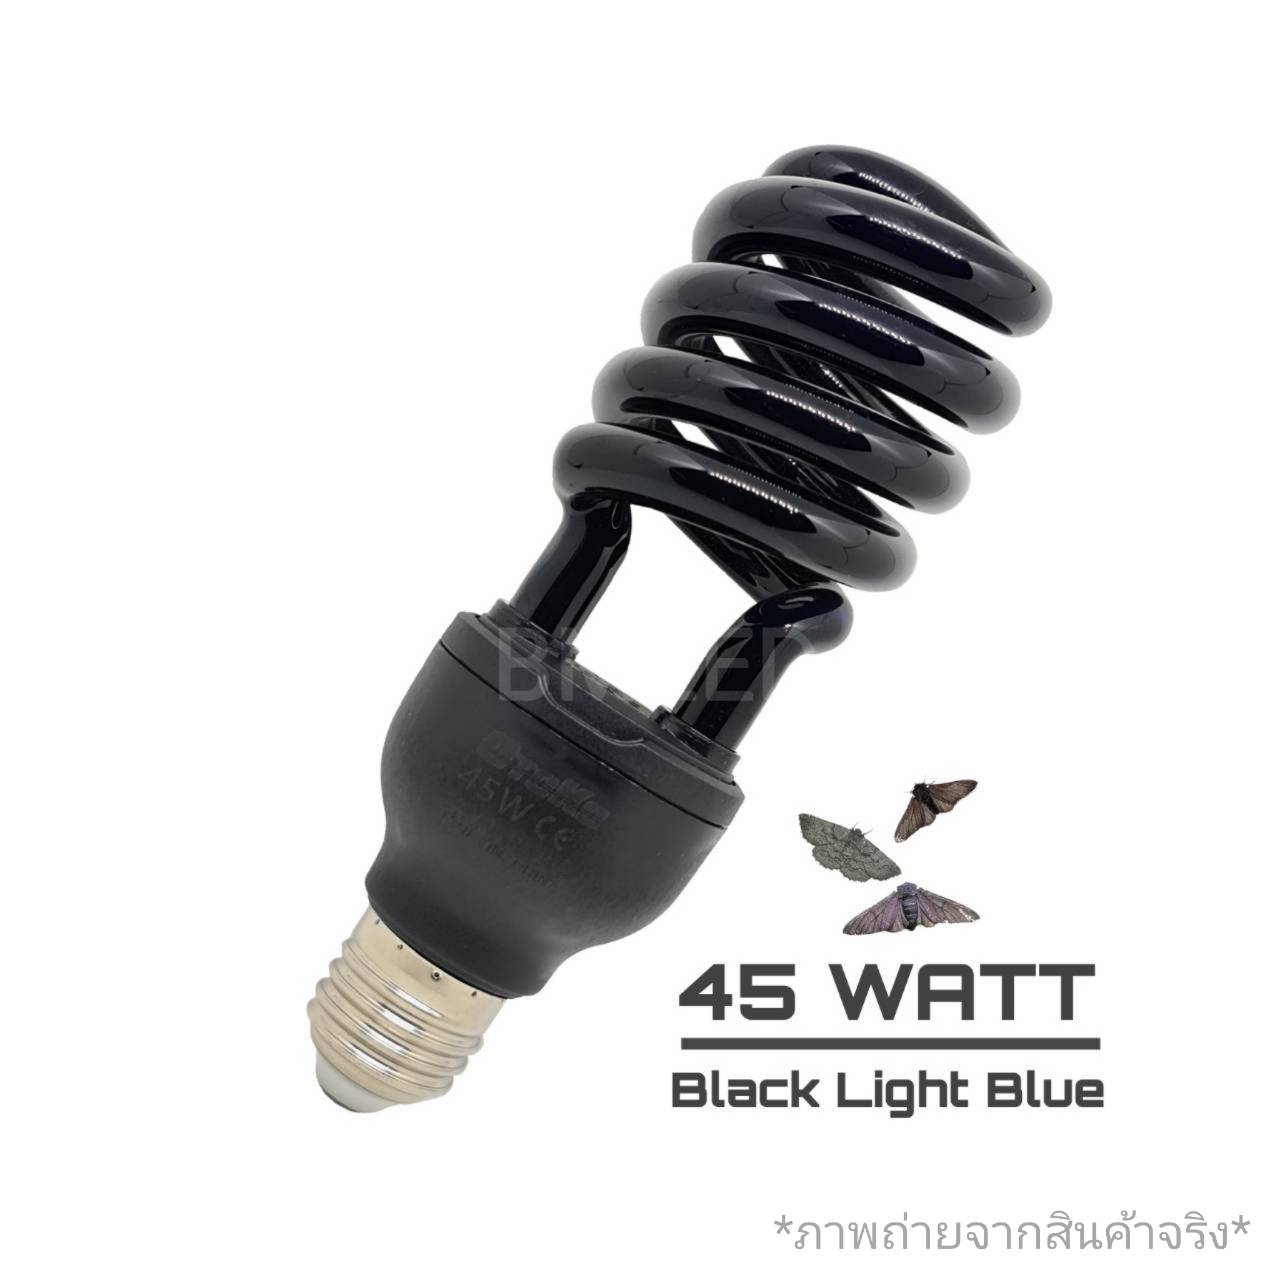 หลอดไฟล่อแมลง หลอดไฟล่อแมงดา 20วัตต์ 30วัตต์ และ 45วัตต์  ขั้ว E27 AC 220V(ไฟบ้าน) หลอดแบล็คไลท์ BlackLight Blue สินค้าในไทยพร้อมส่งไม่ต้องรอนาน